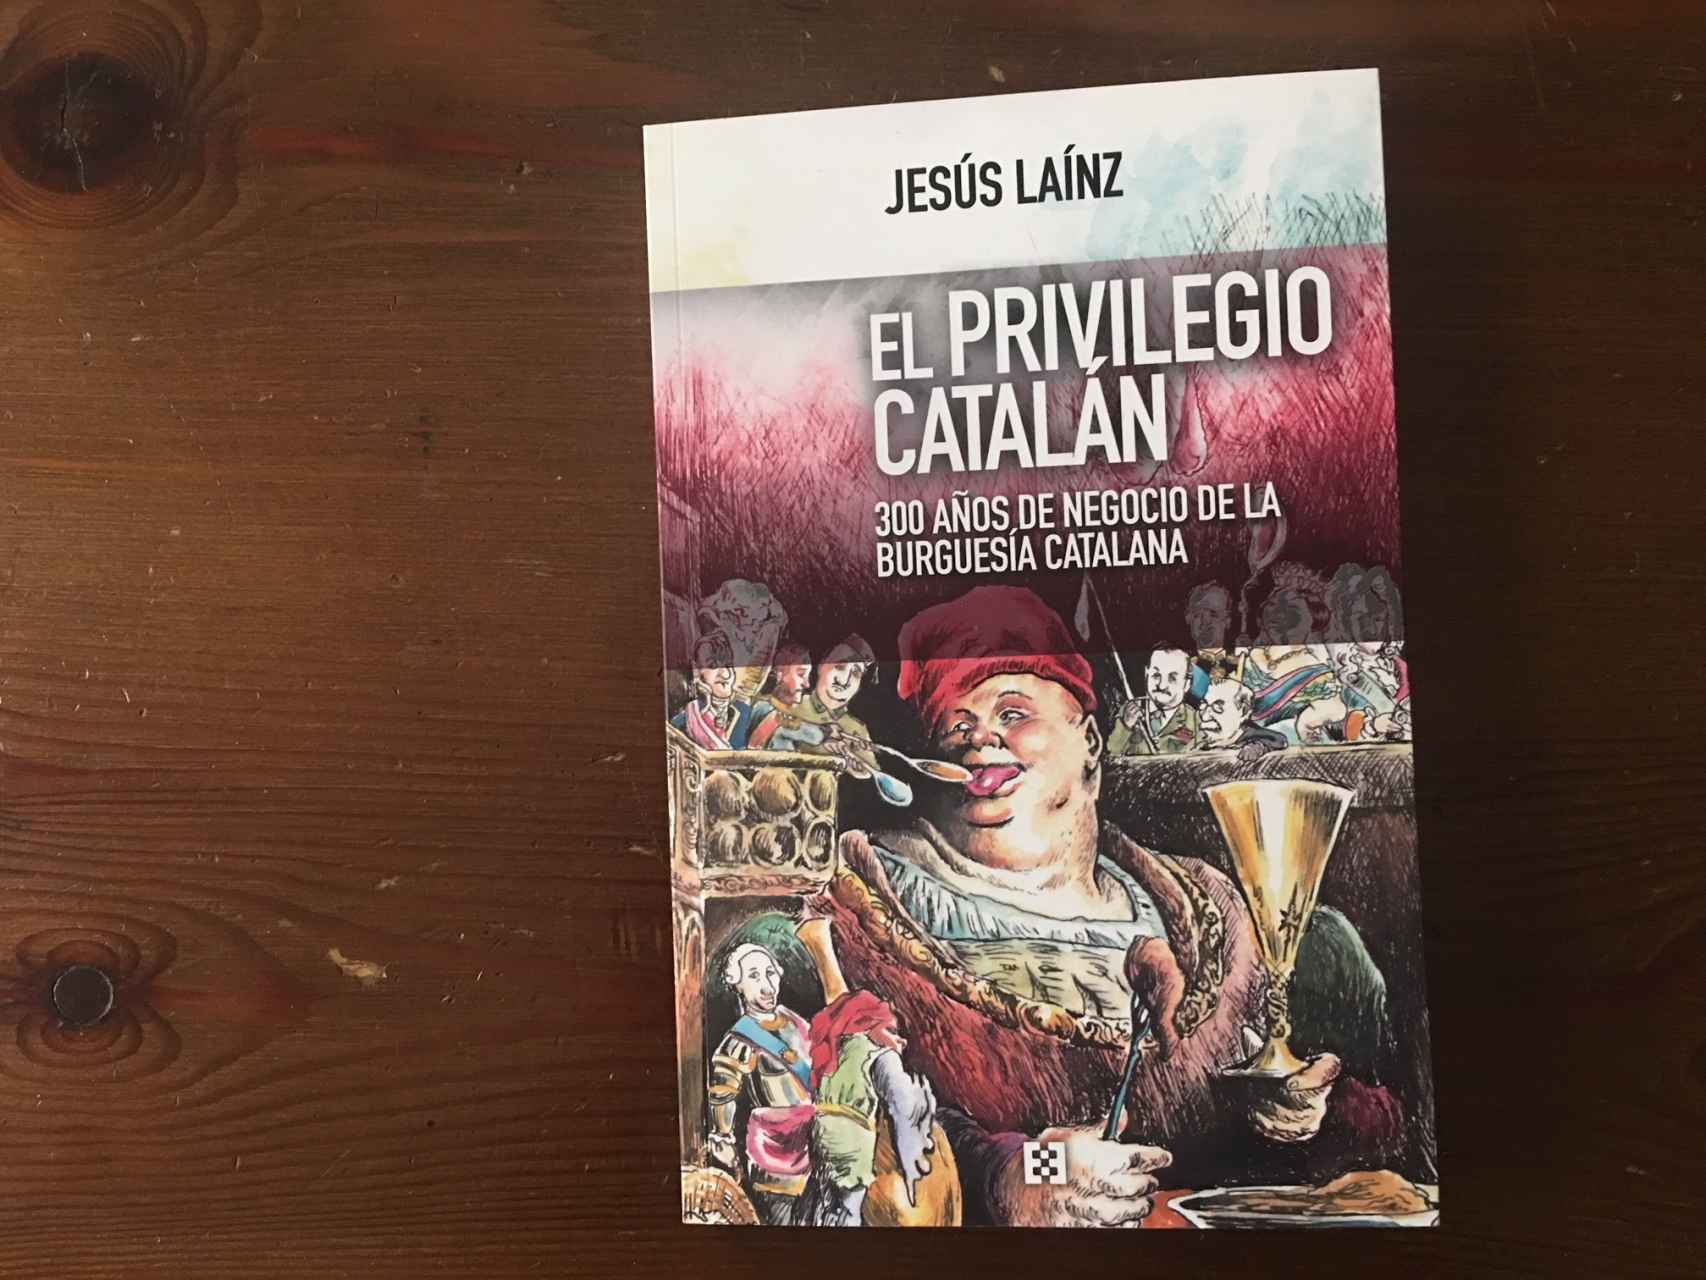 El privilegio catalán, de Jesús Laínz